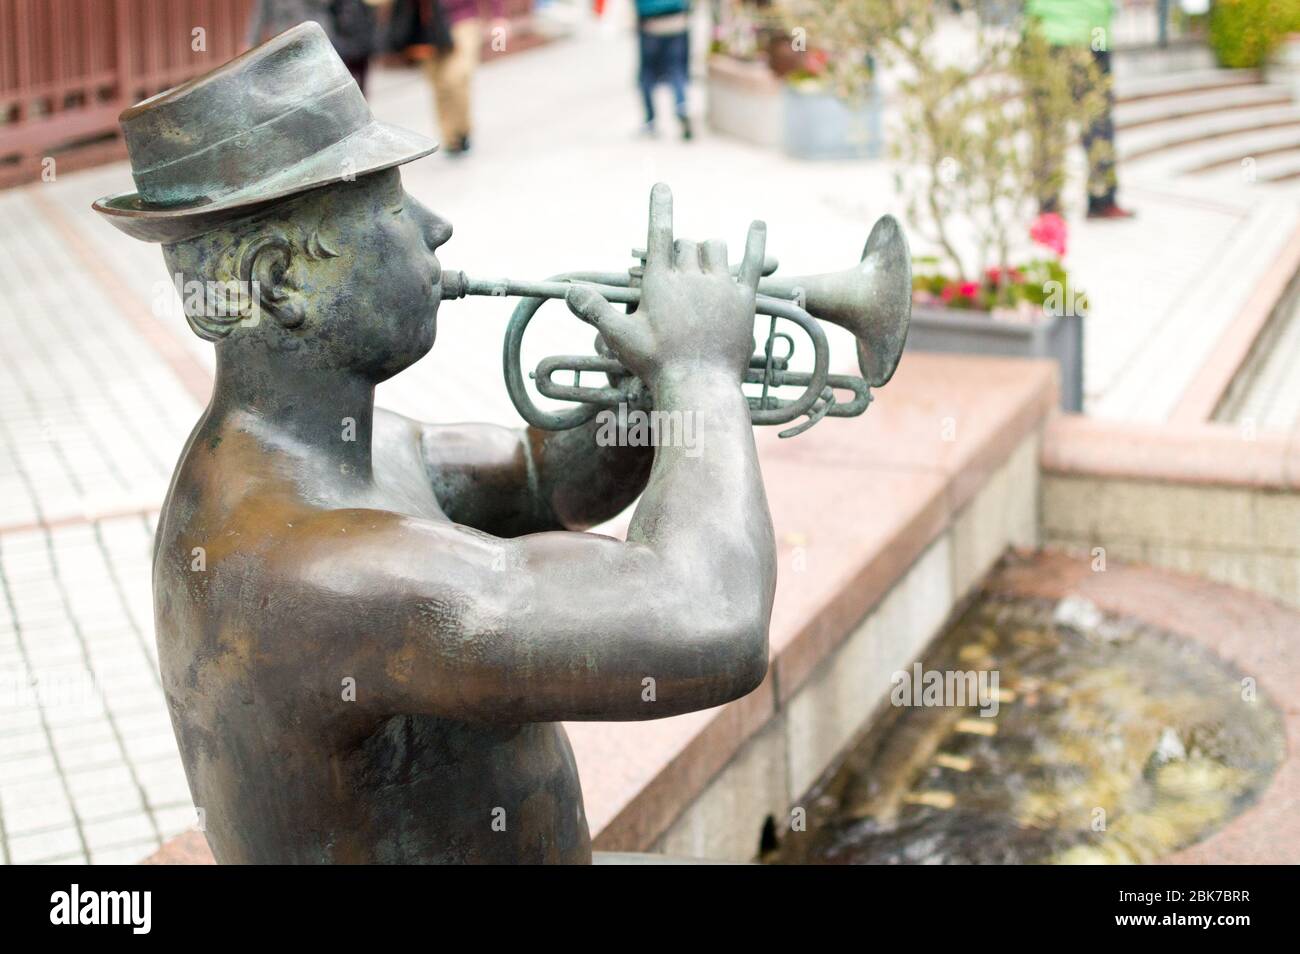 Jazzmusiker Statue Stockfotos und -bilder Kaufen - Alamy